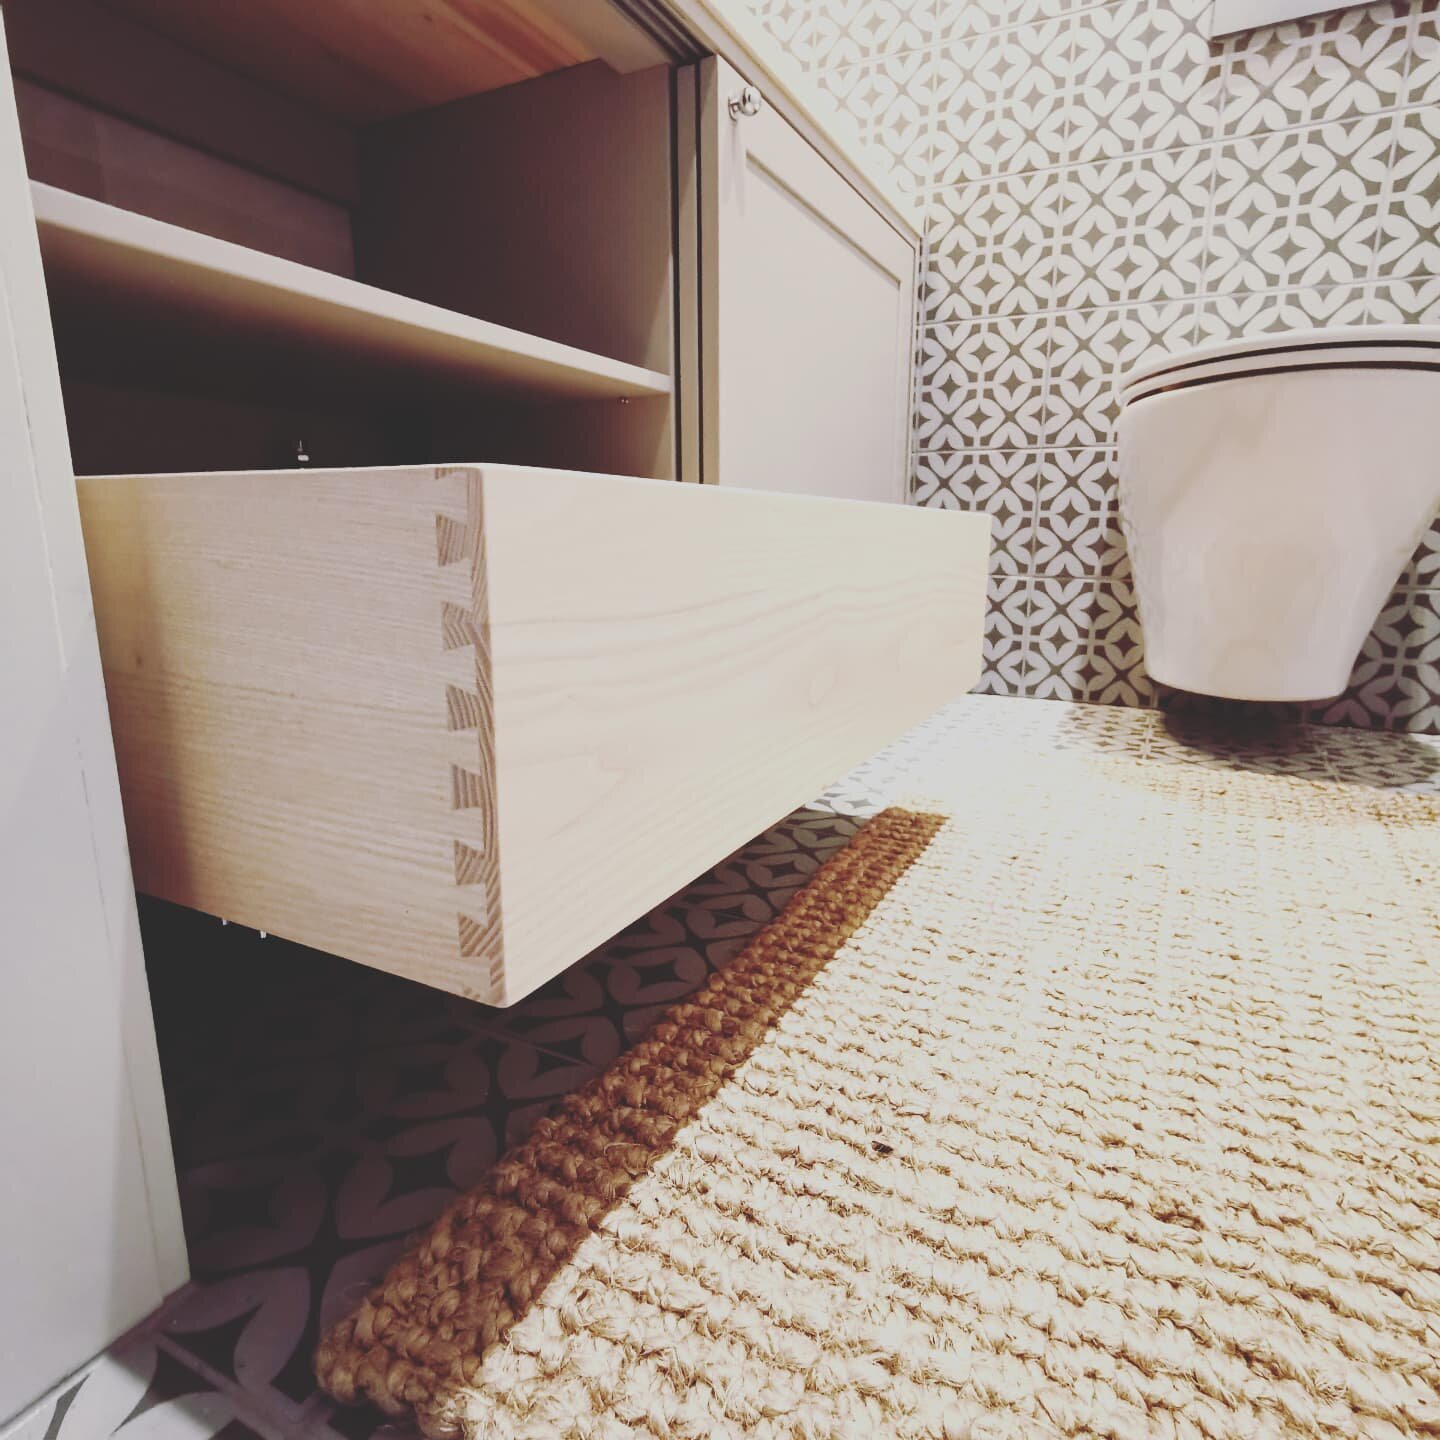 WC kaapiston sis&auml;laatikko.

Massiivisaarni.

#puusepp&auml;turku #m&ouml;bler #inredning #woodworking #kylpyhuoneremontti
#kylpyhuone
#wc
#badrum